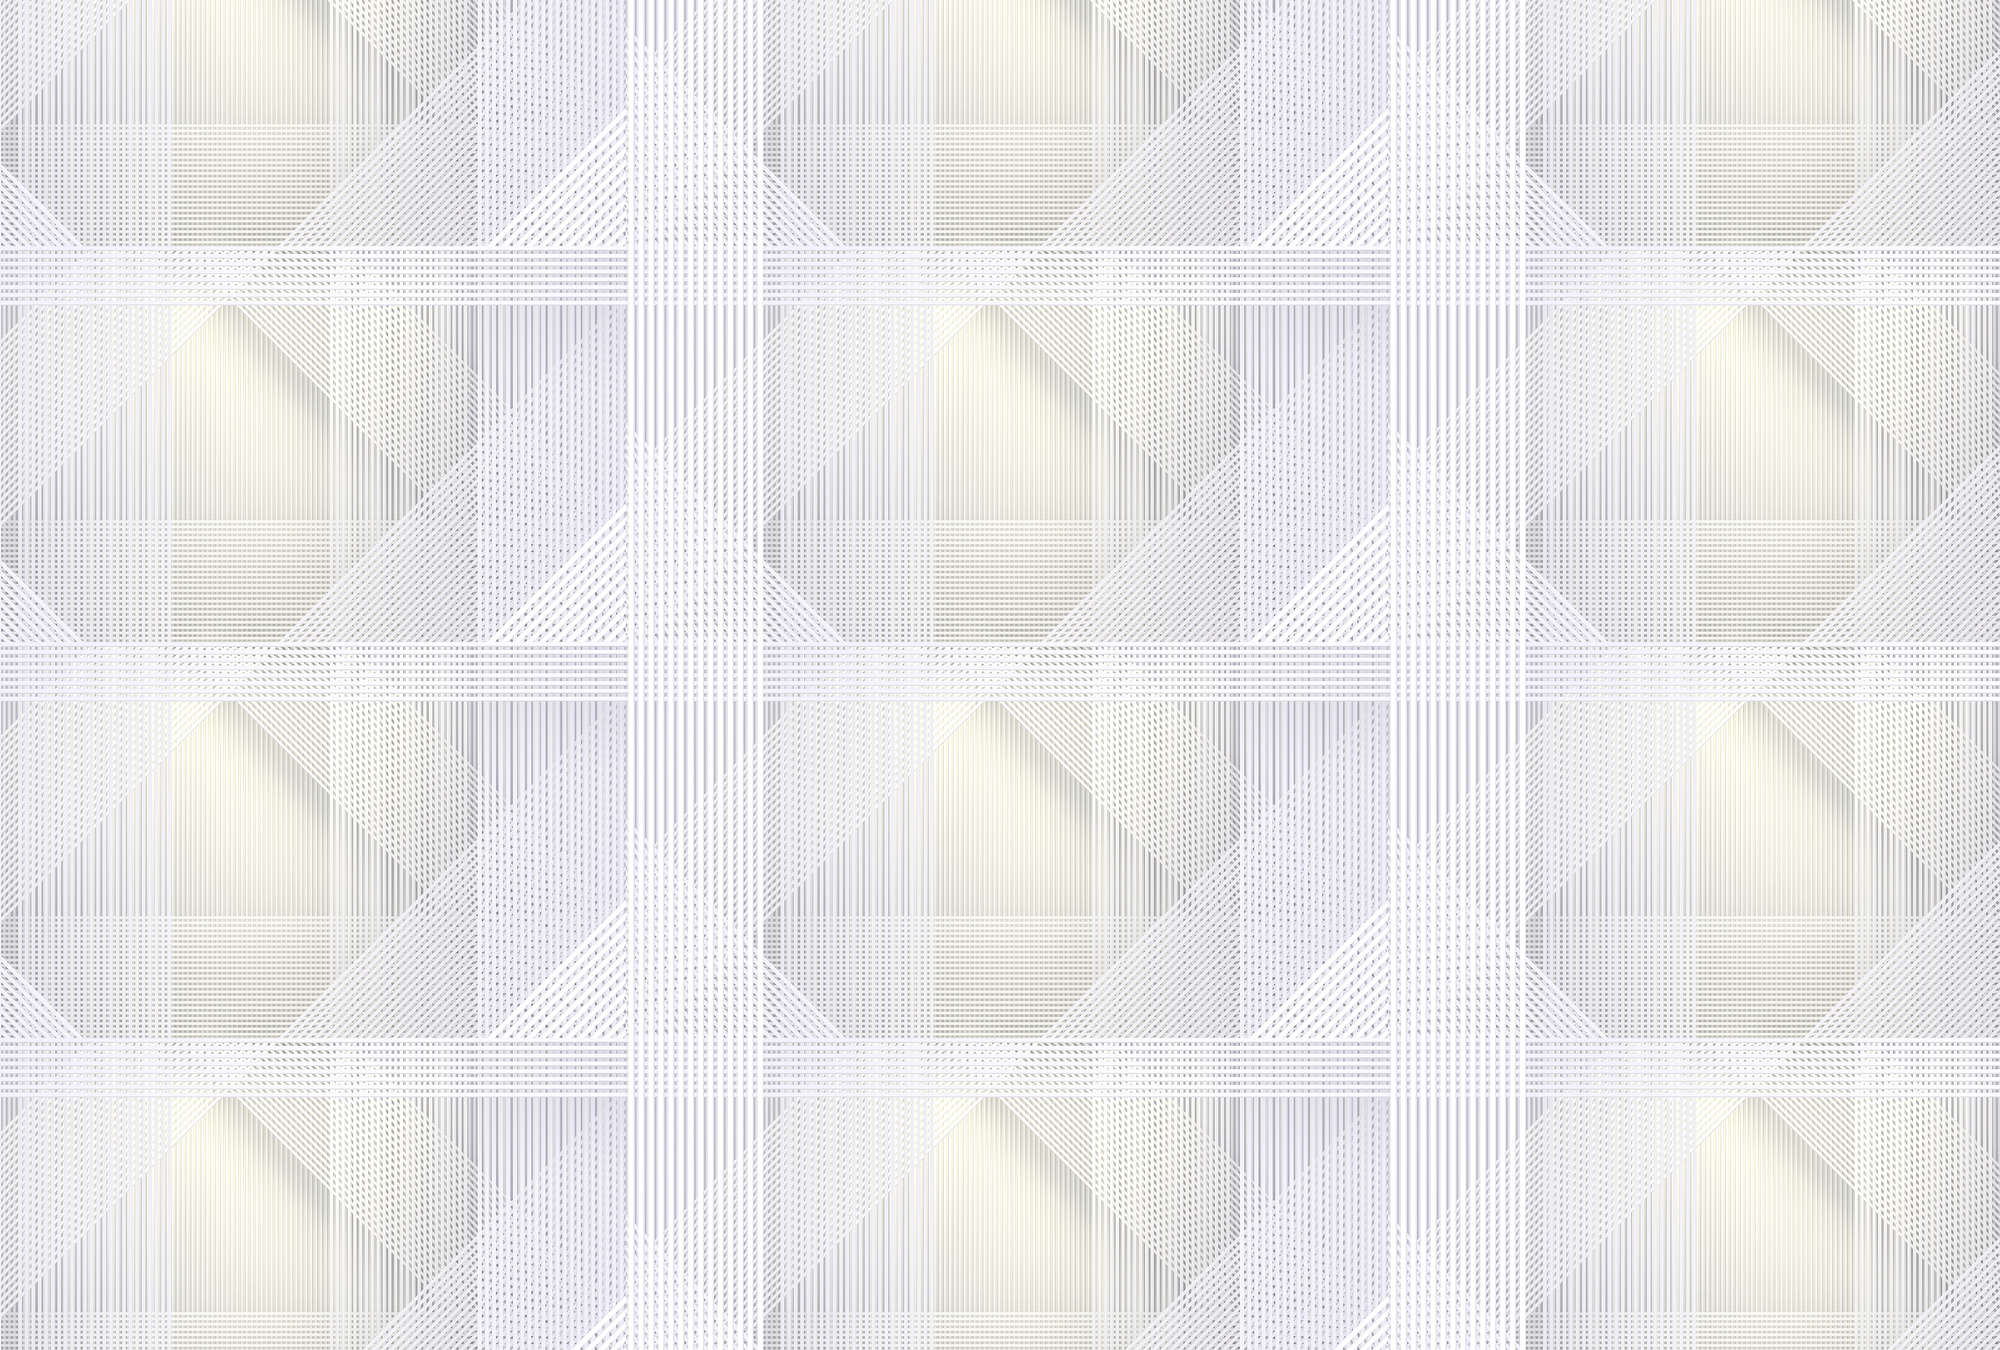             Strings 1 - Fotomurali a righe geometriche - Giallo, Grigio | Materiali non tessuto liscio perlato
        